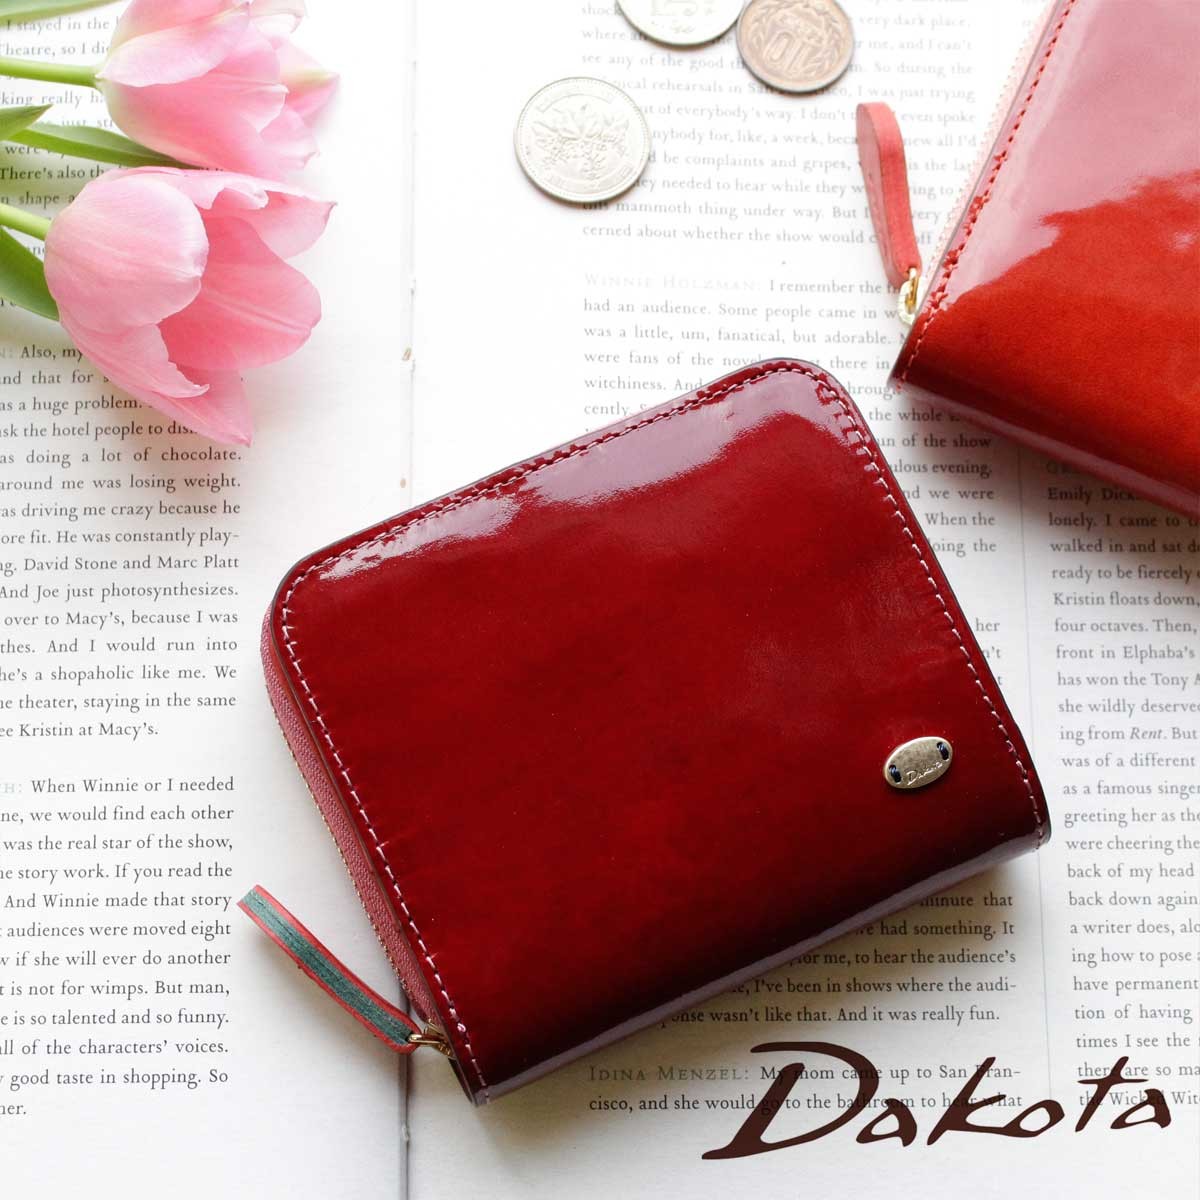 Dakota グロッソ 2つ折り財布 0036461 * レディース二つ折り財布の商品画像